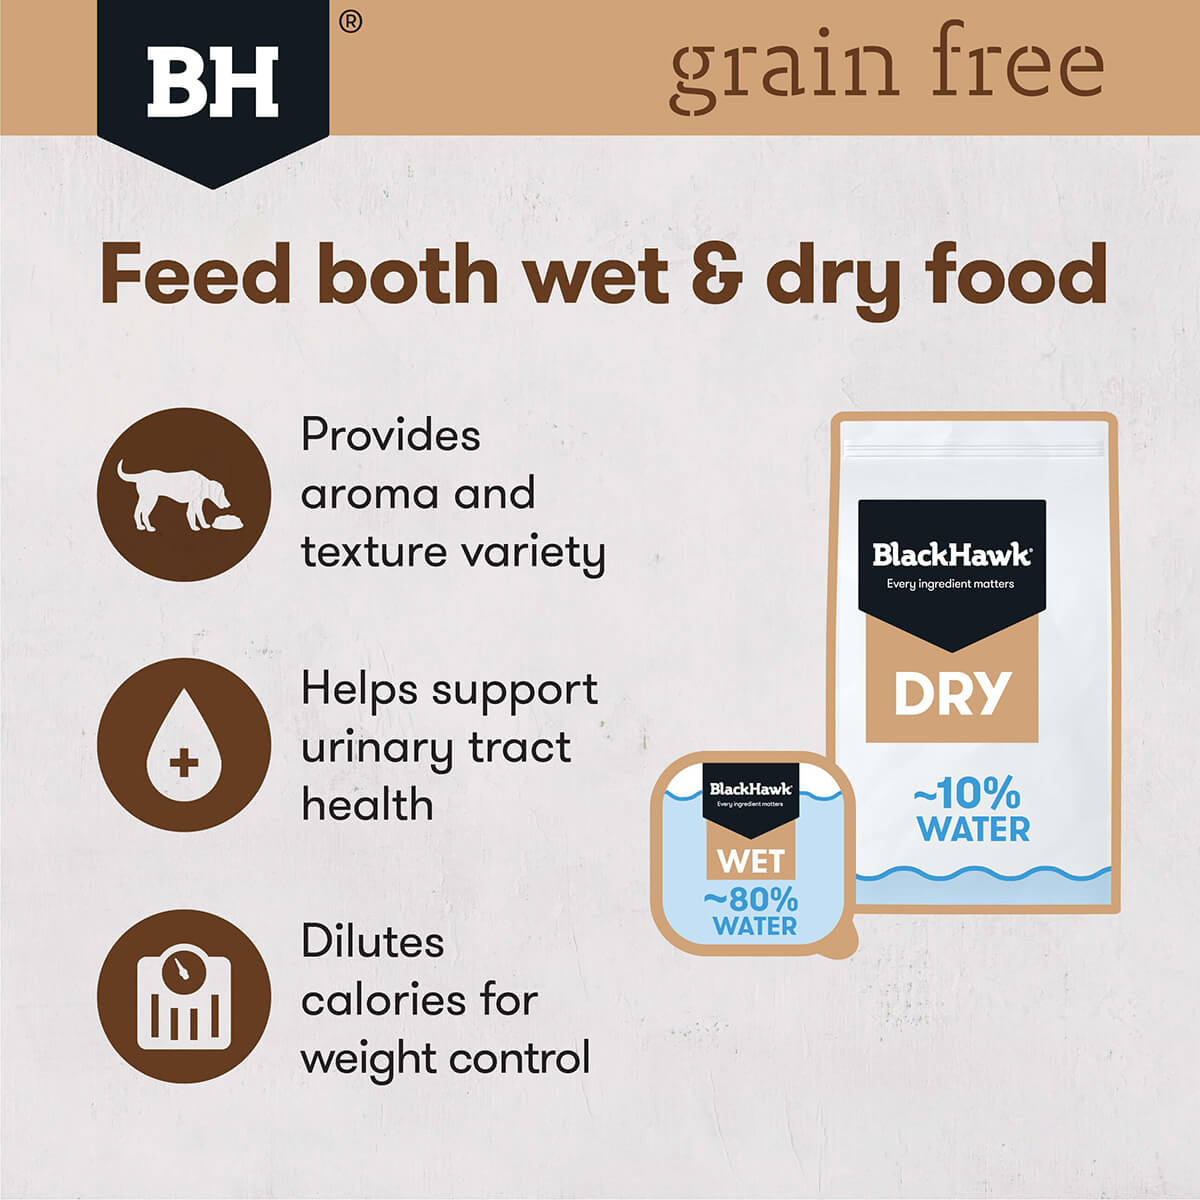 Black Hawk Grain Free Adult Beef Wet Dog Food (122713000016) [default_color]